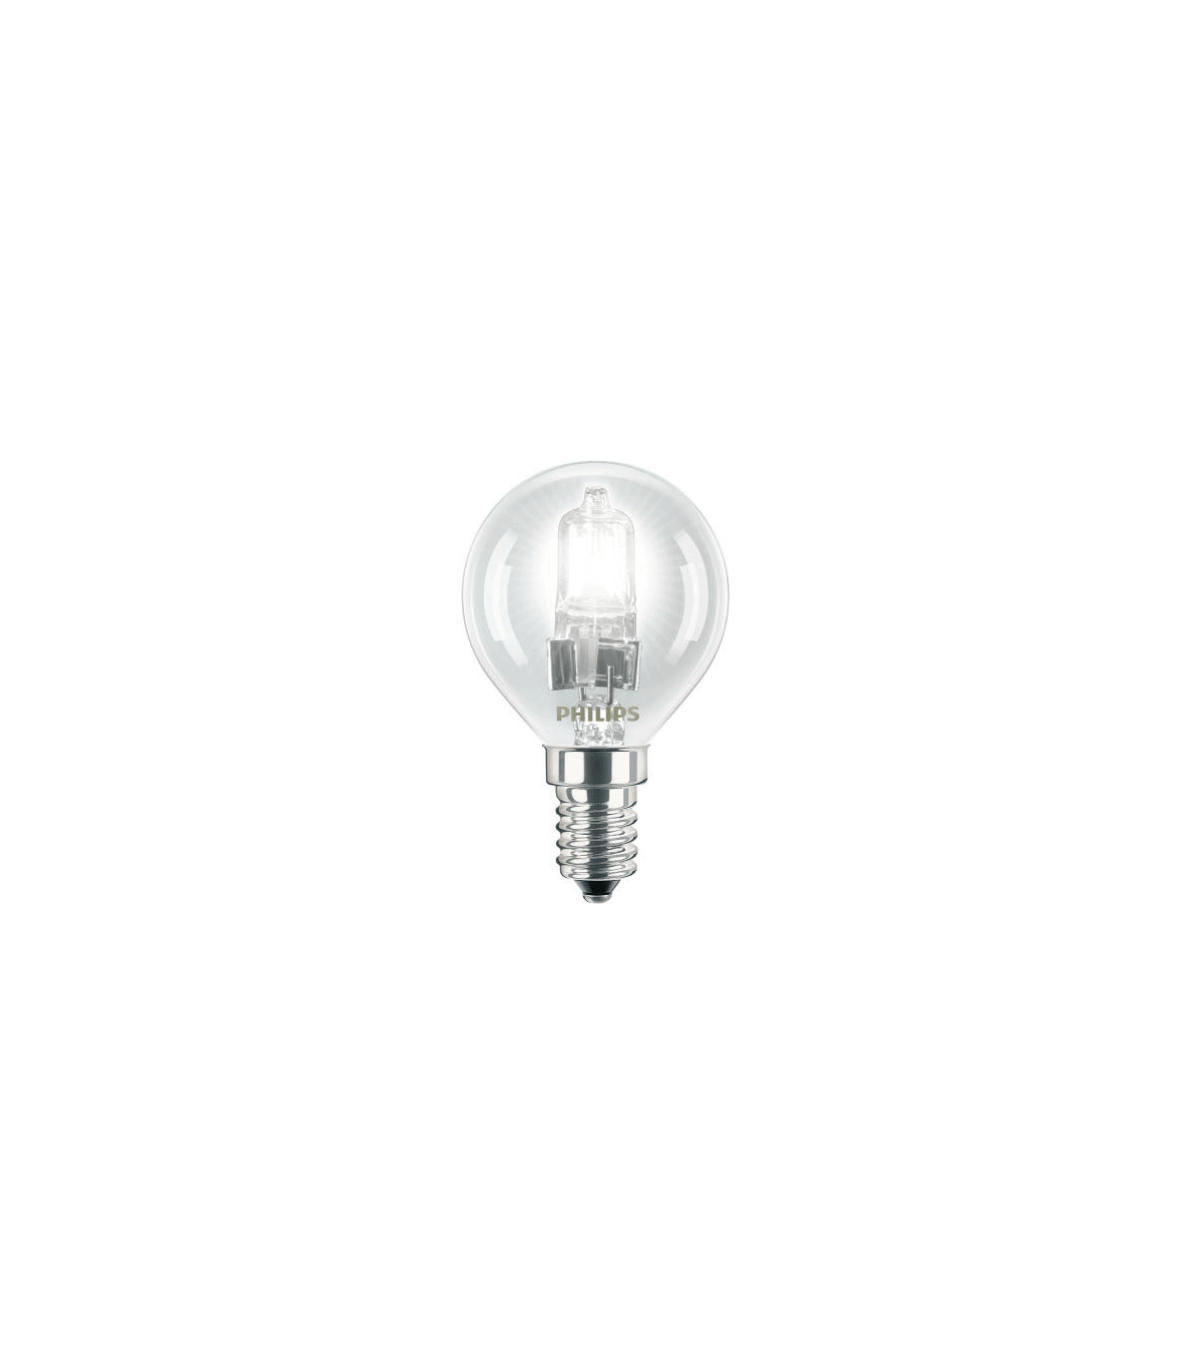 Ampoule flamme lisse 15W E14 230V - Lampe claire à incandescence